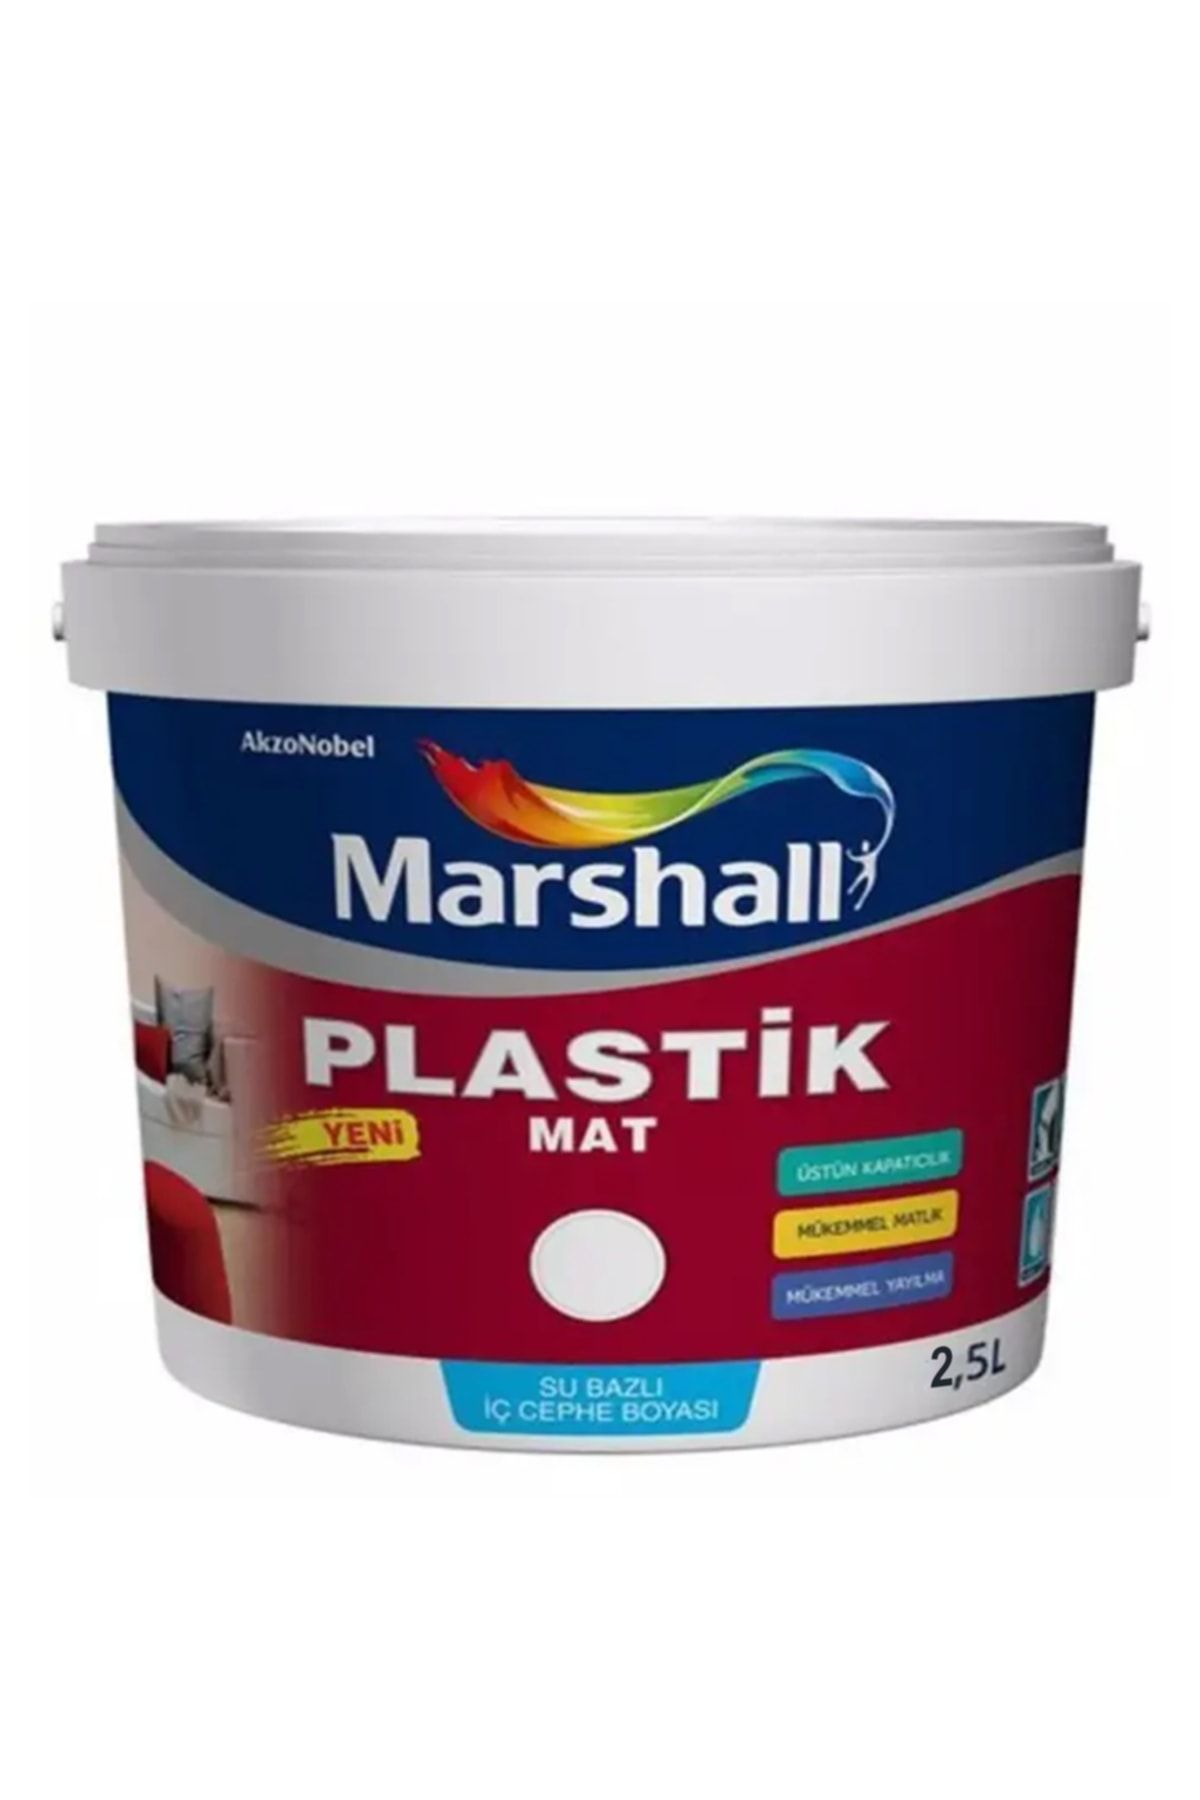 Marshall Plastik Mat Silinebilir Iç Cephe Boyası Karabiber 2,5 Lt (3,5 Kg)